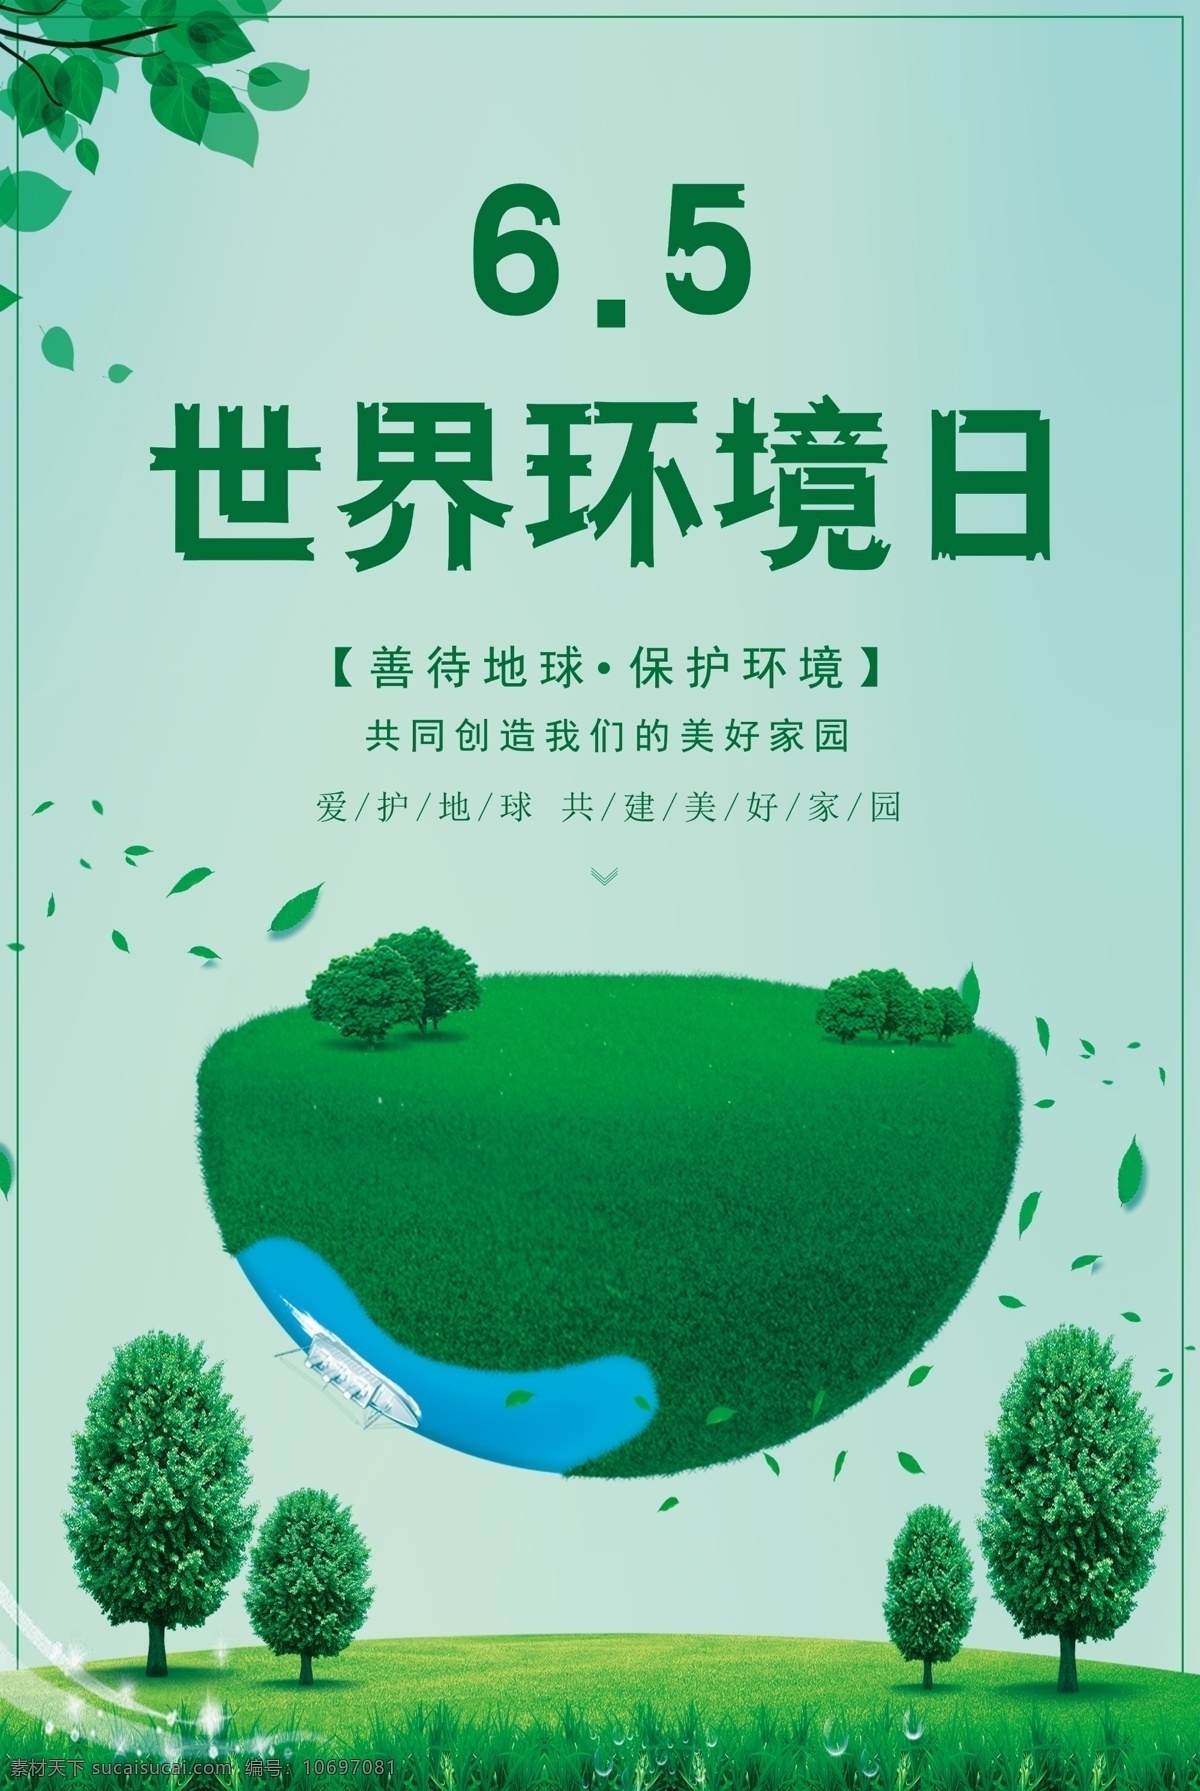 世界环境日 宣传海报 模板 地球 爱护环境 保护环境 环境保护 创建绿色家园 绿色青山 造福人民 环境日海报 态环境 爱护家园 环境日 爱护地球 保护家园